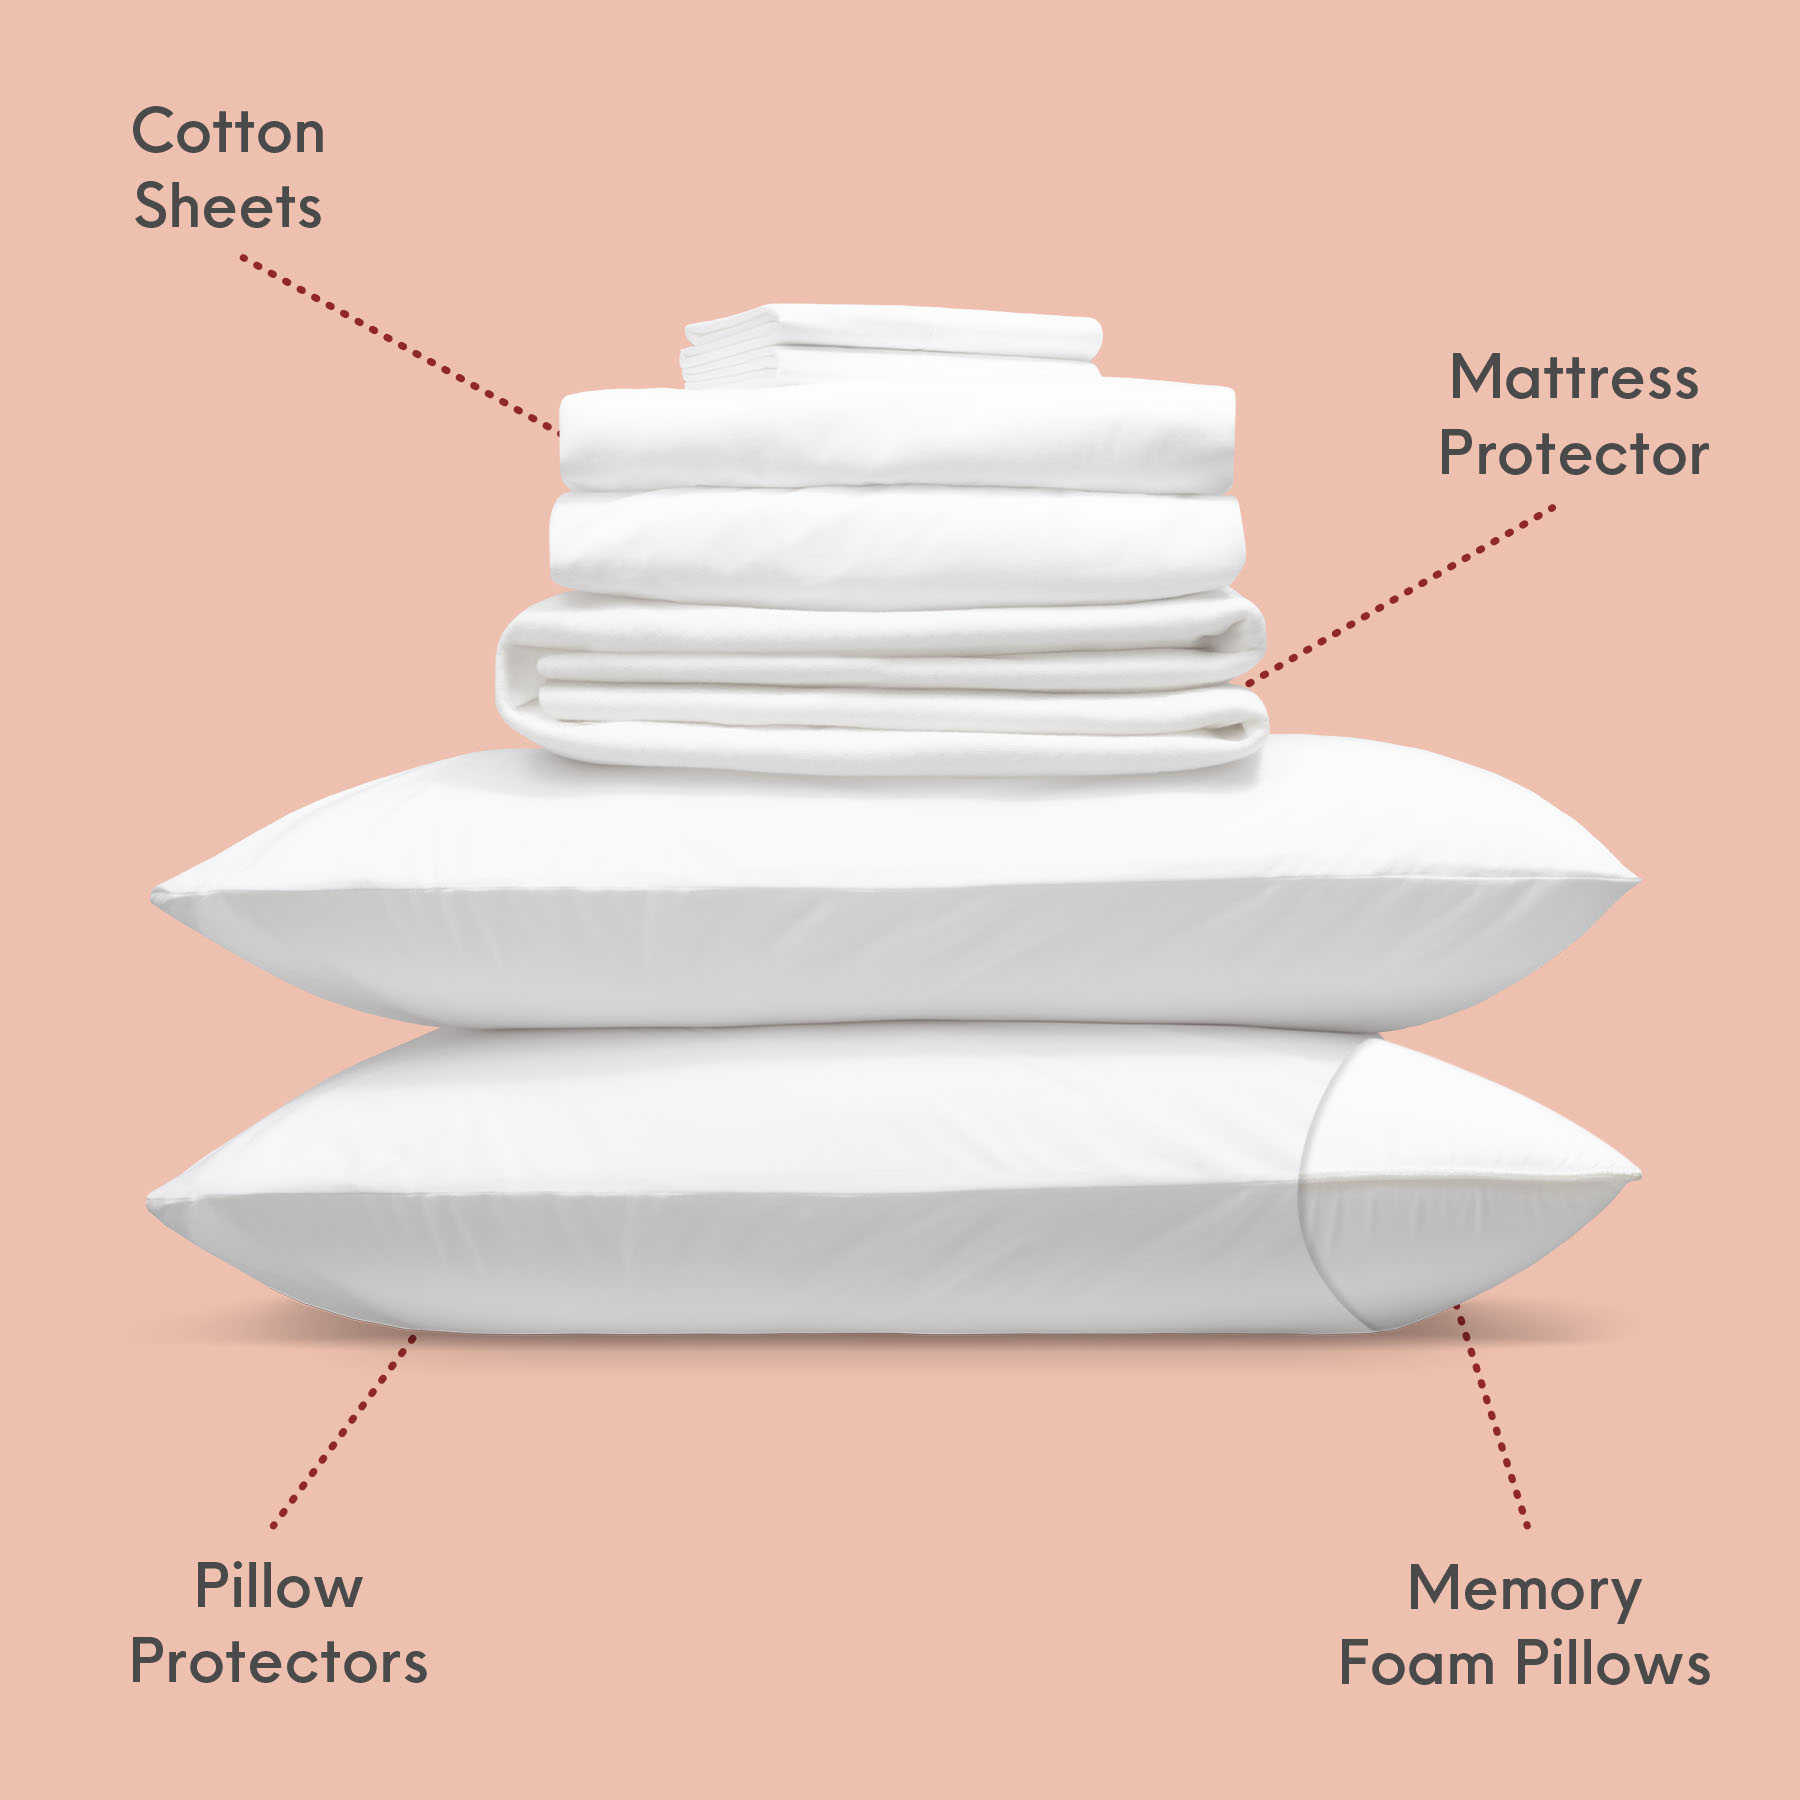 Douglas Comfort Sleep Bundle: pillows, sheets, mattress protector, and pillow protector